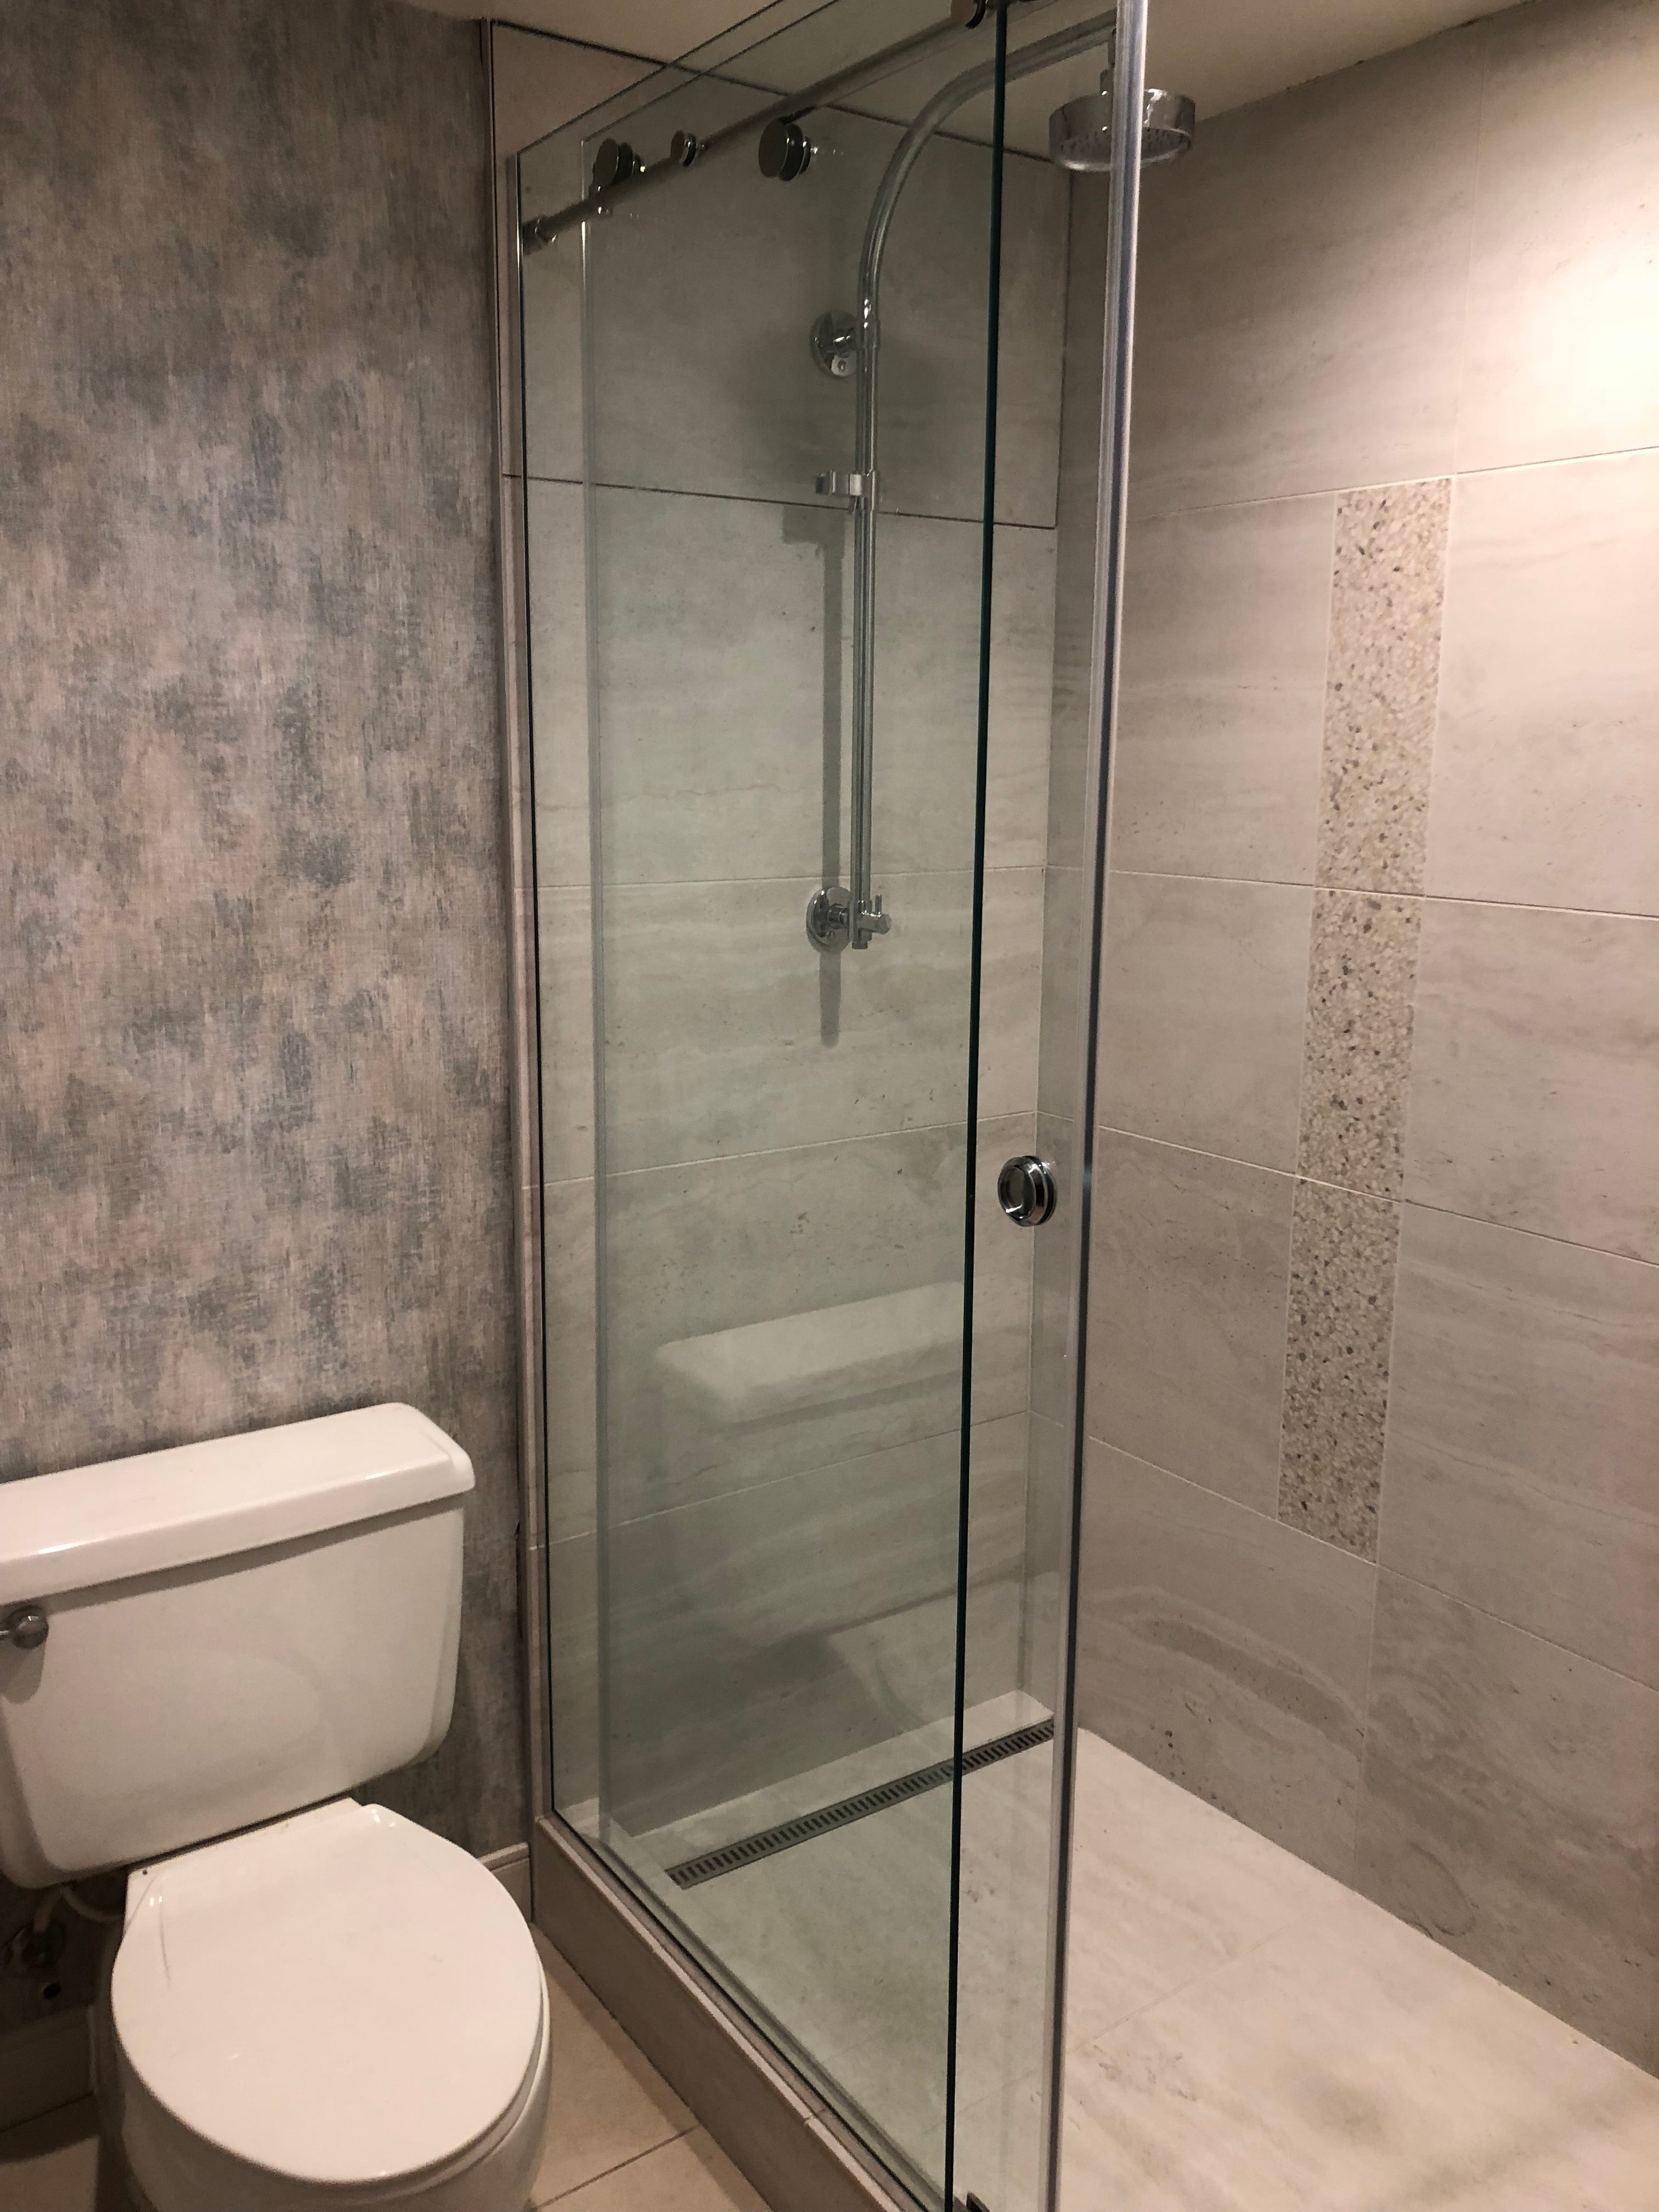 Renaissance Phoenix Downtown Hotel guest bathroom featuring large-format tile